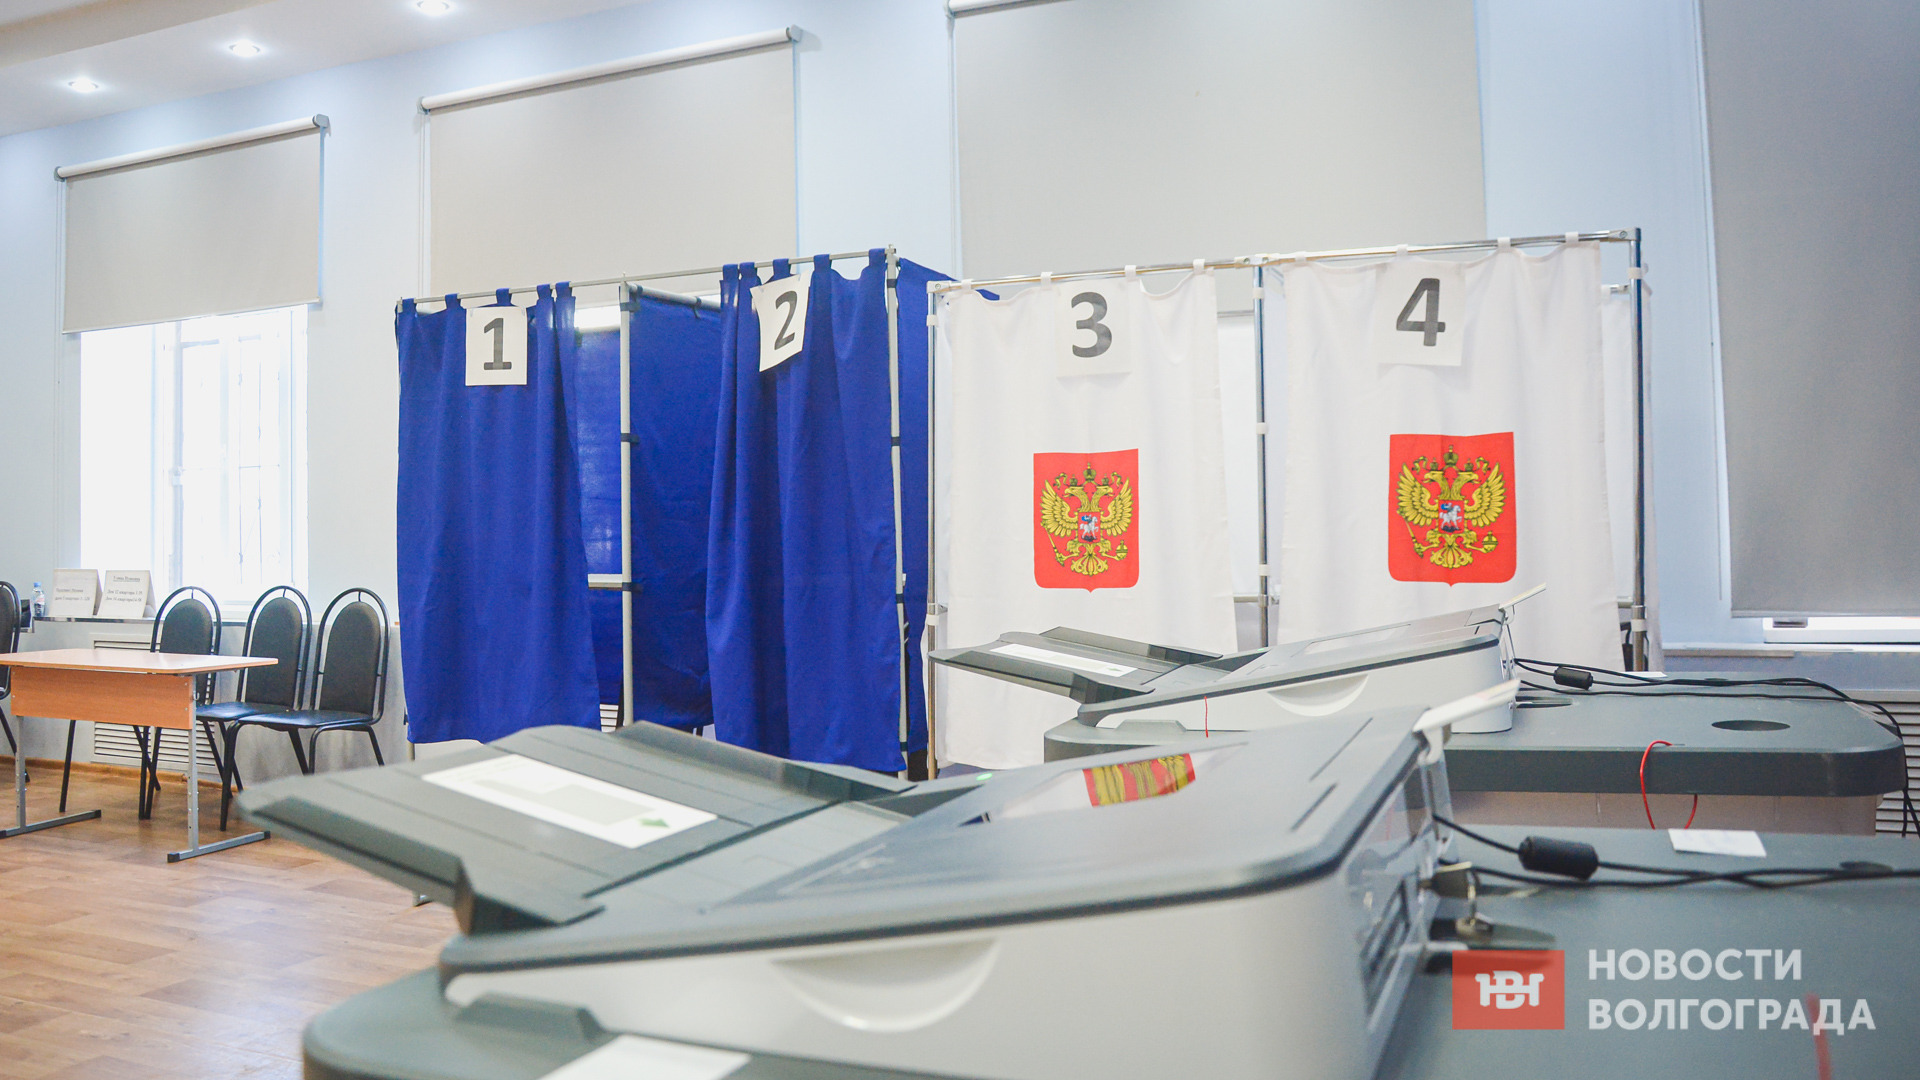 По явке избирателей лидирует Камышин — 33,45%